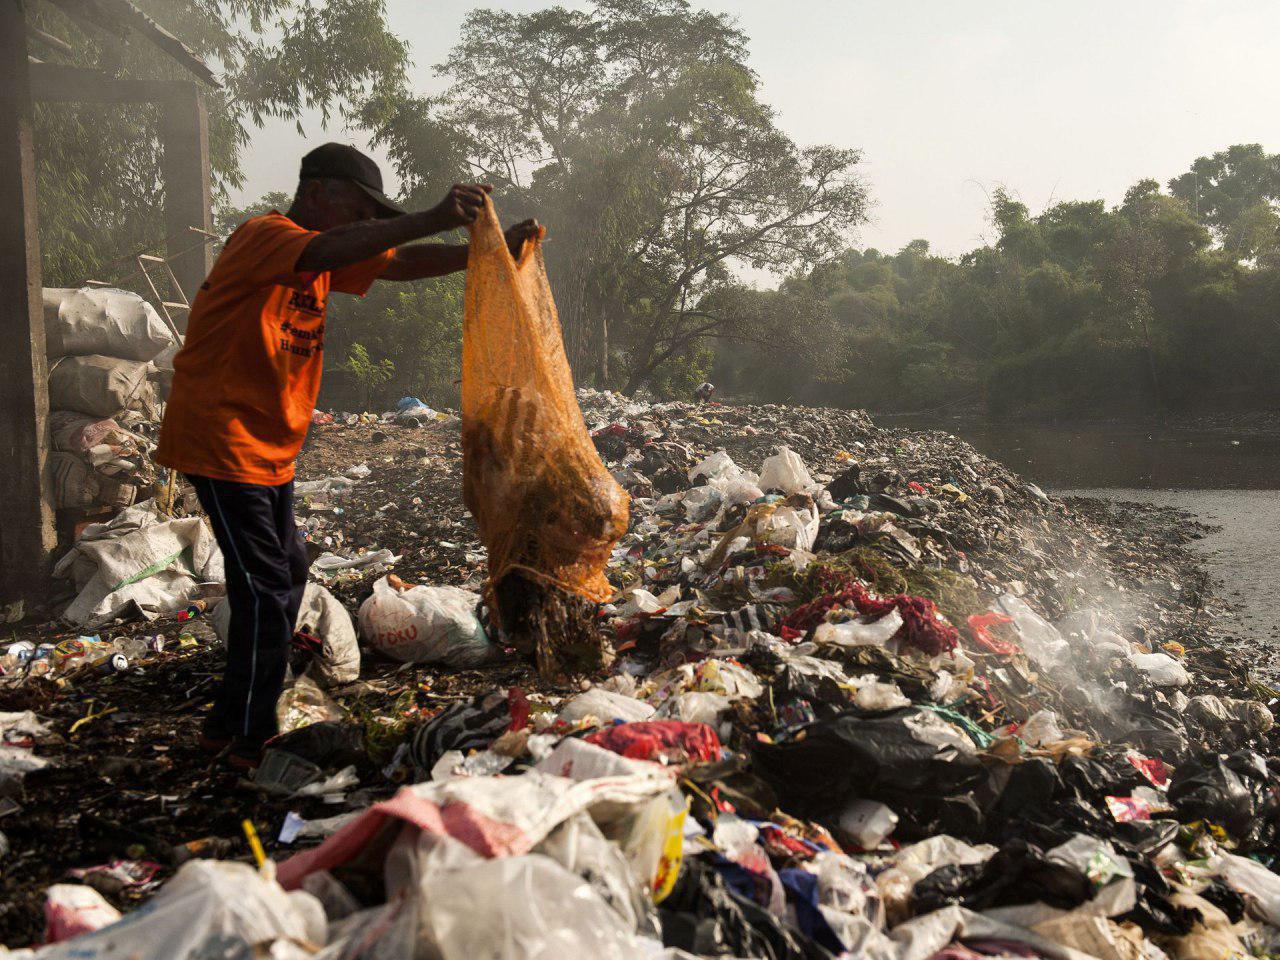 تخلیه زباله در حاشیه رودخانه "سیتروم" اندونزی +عکس